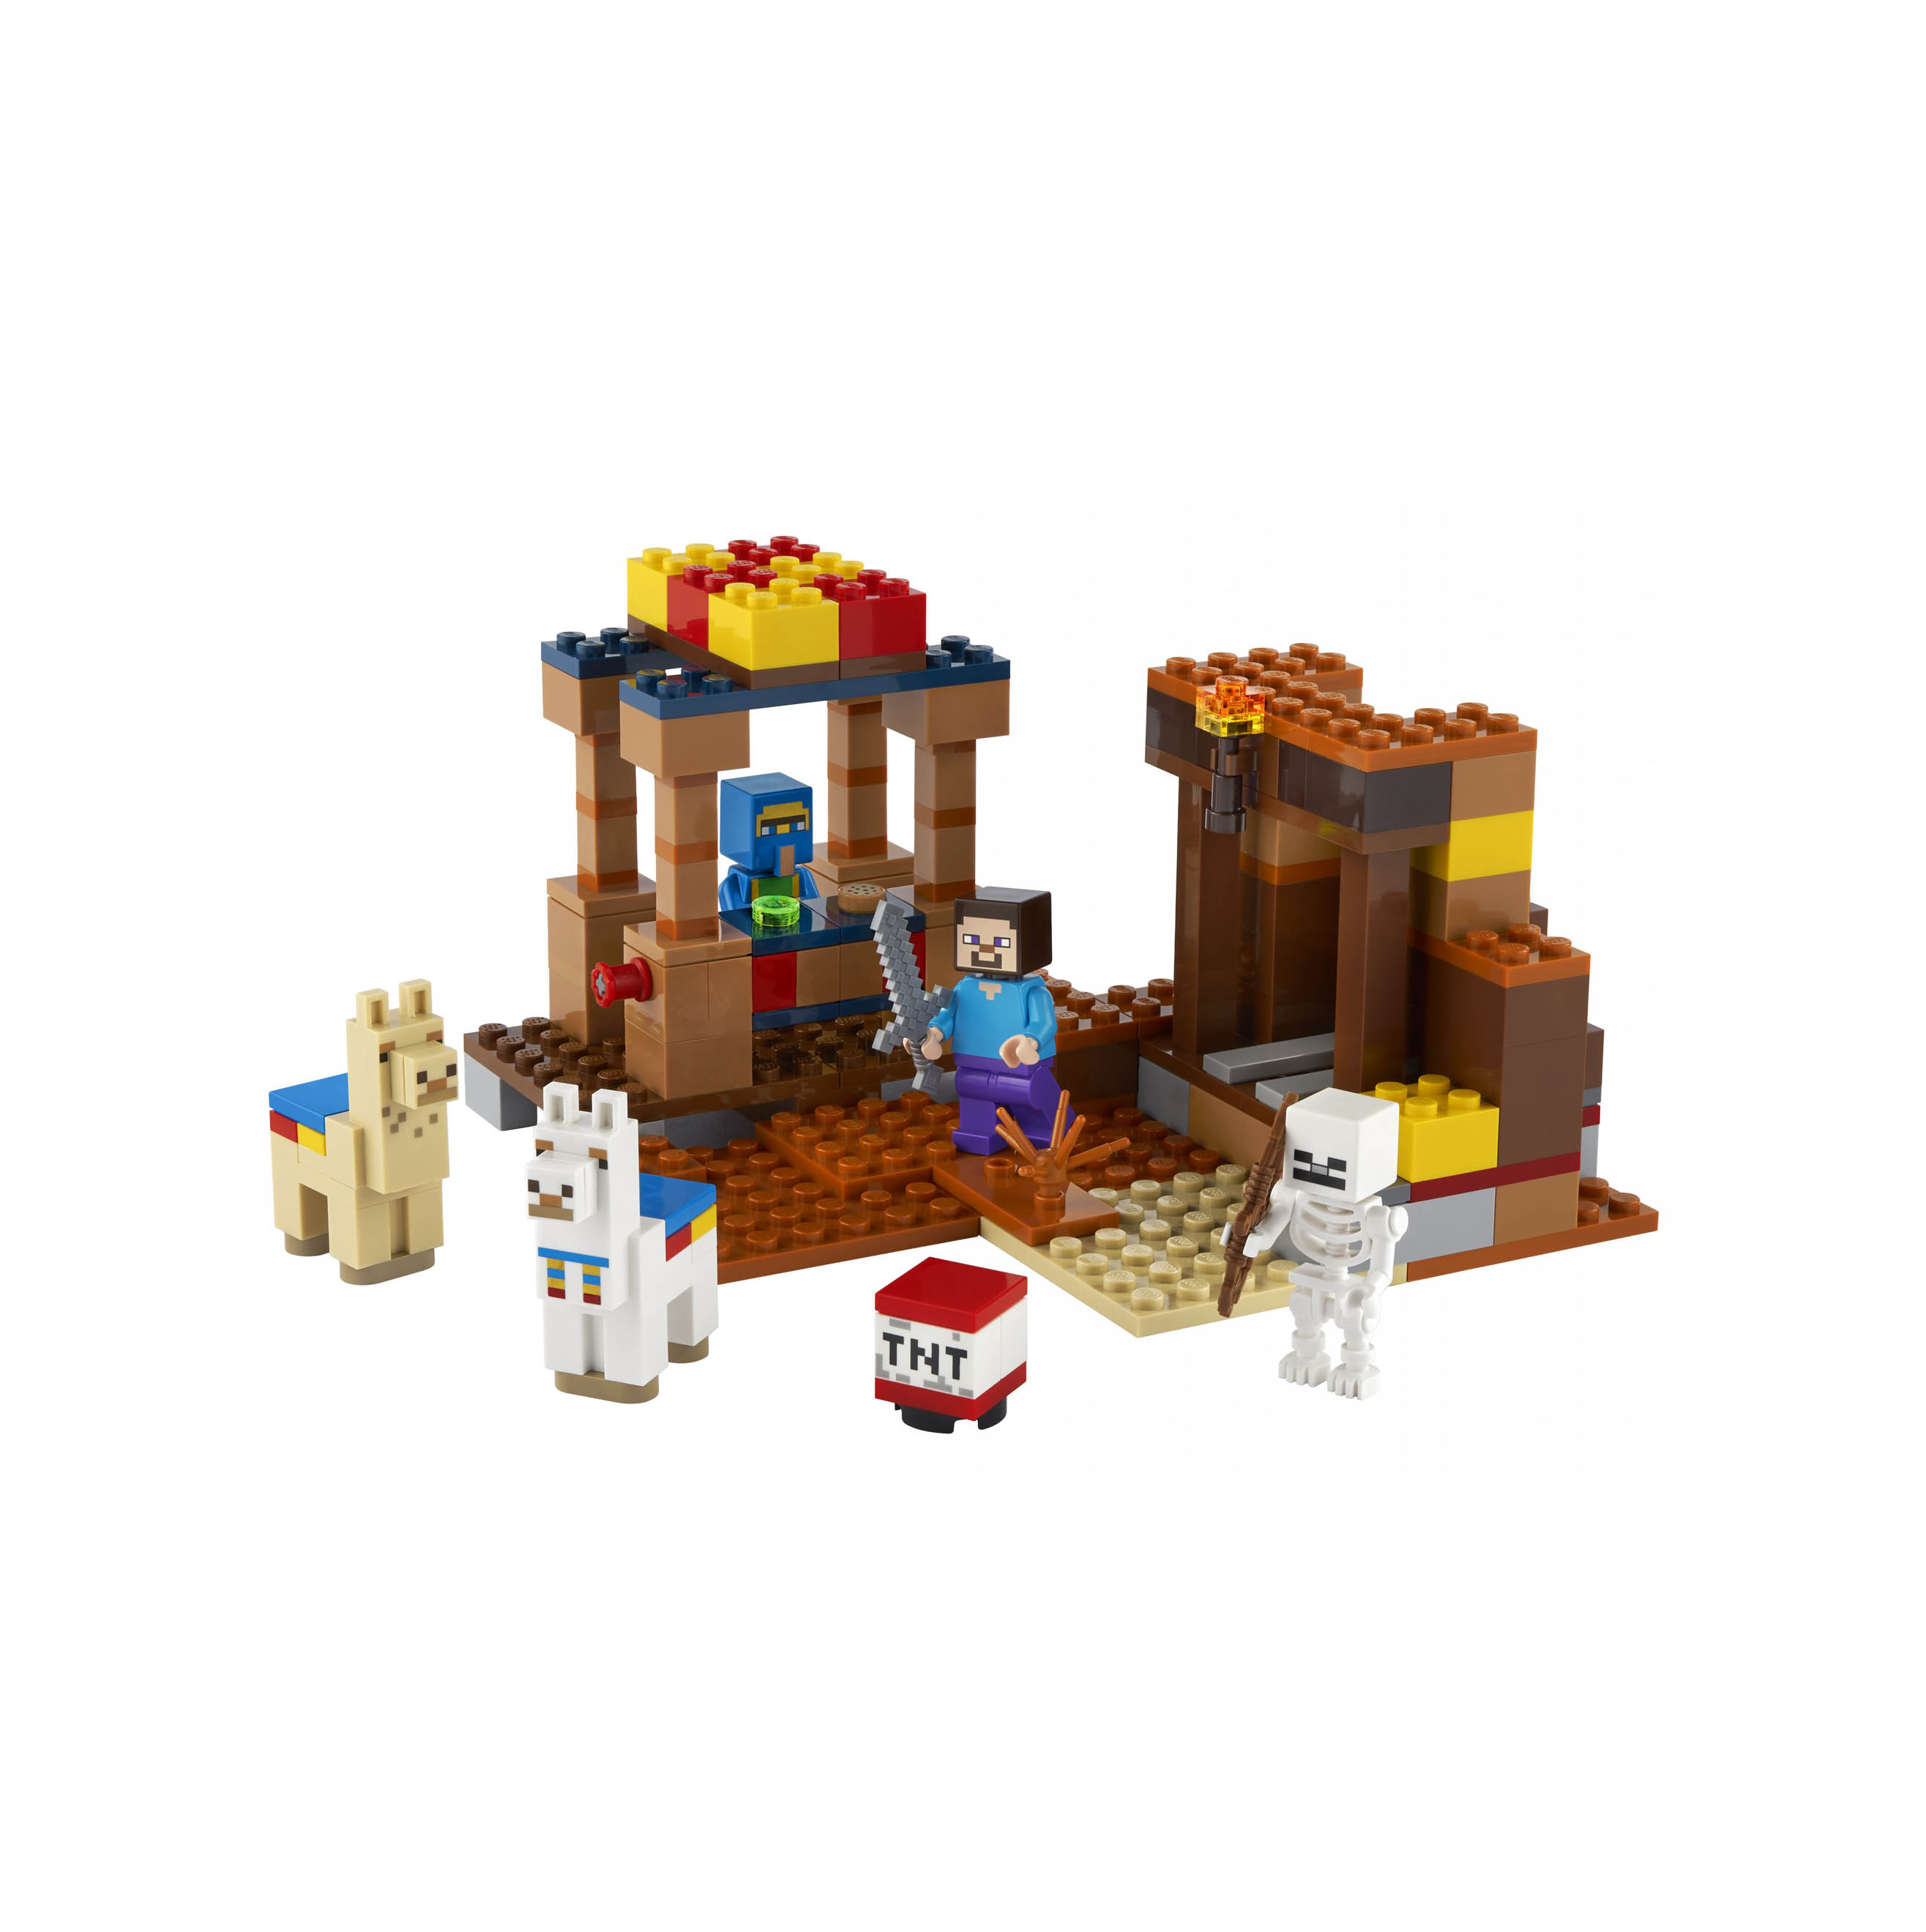 LEGO Minecraft Il Trading Post, Set da Costruzione con Figure di Steve, Scheletr 21167, , large